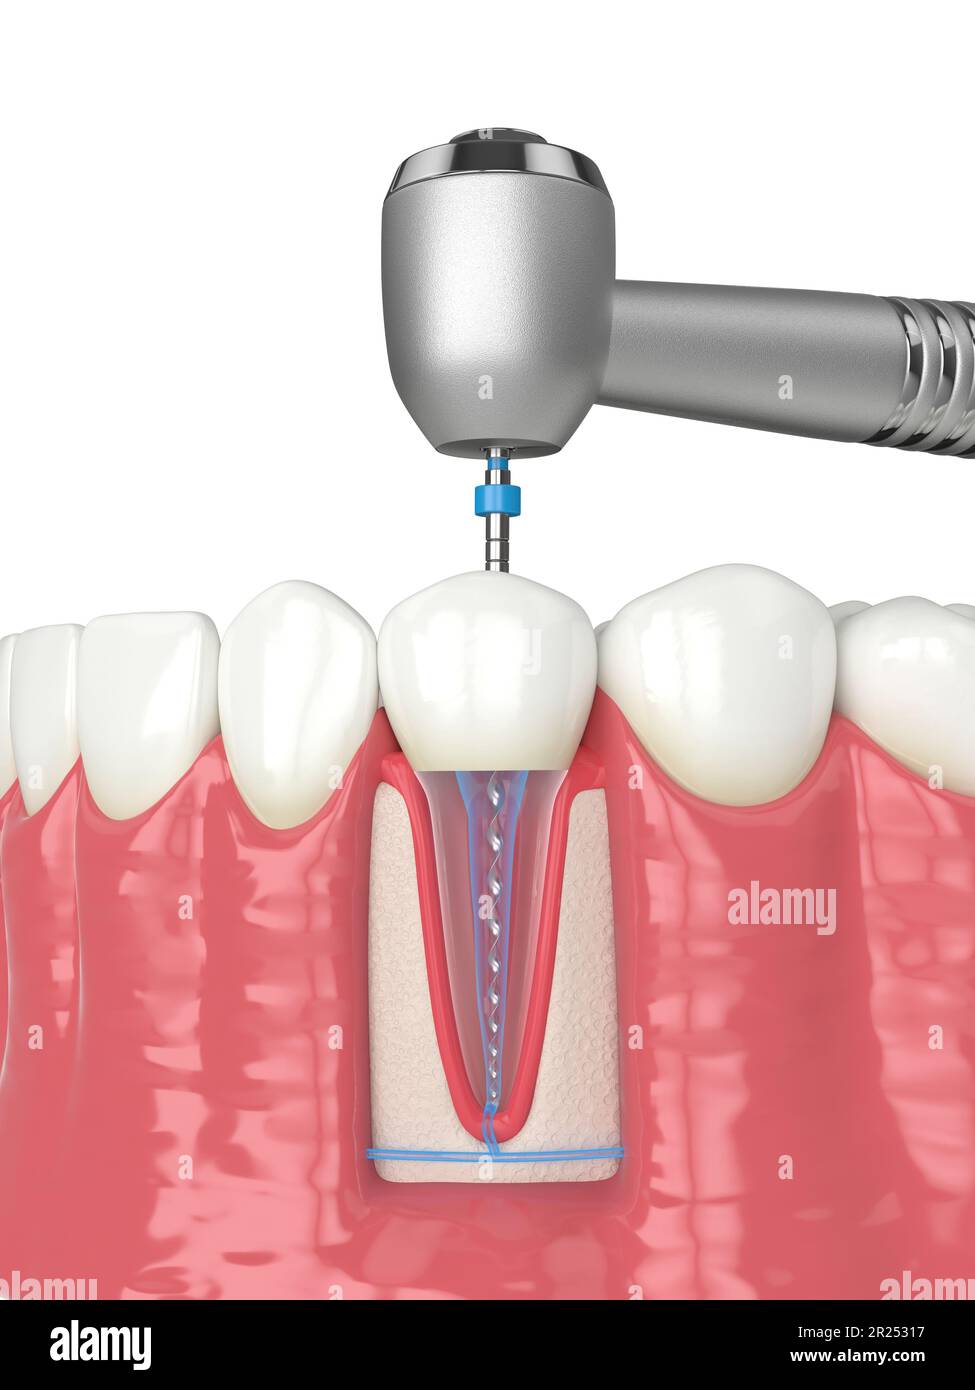 3d rendu de la mâchoire inférieure avec pièce à main et lime rotative endodontique sur fond blanc. Concept de traitement endodontique. Banque D'Images